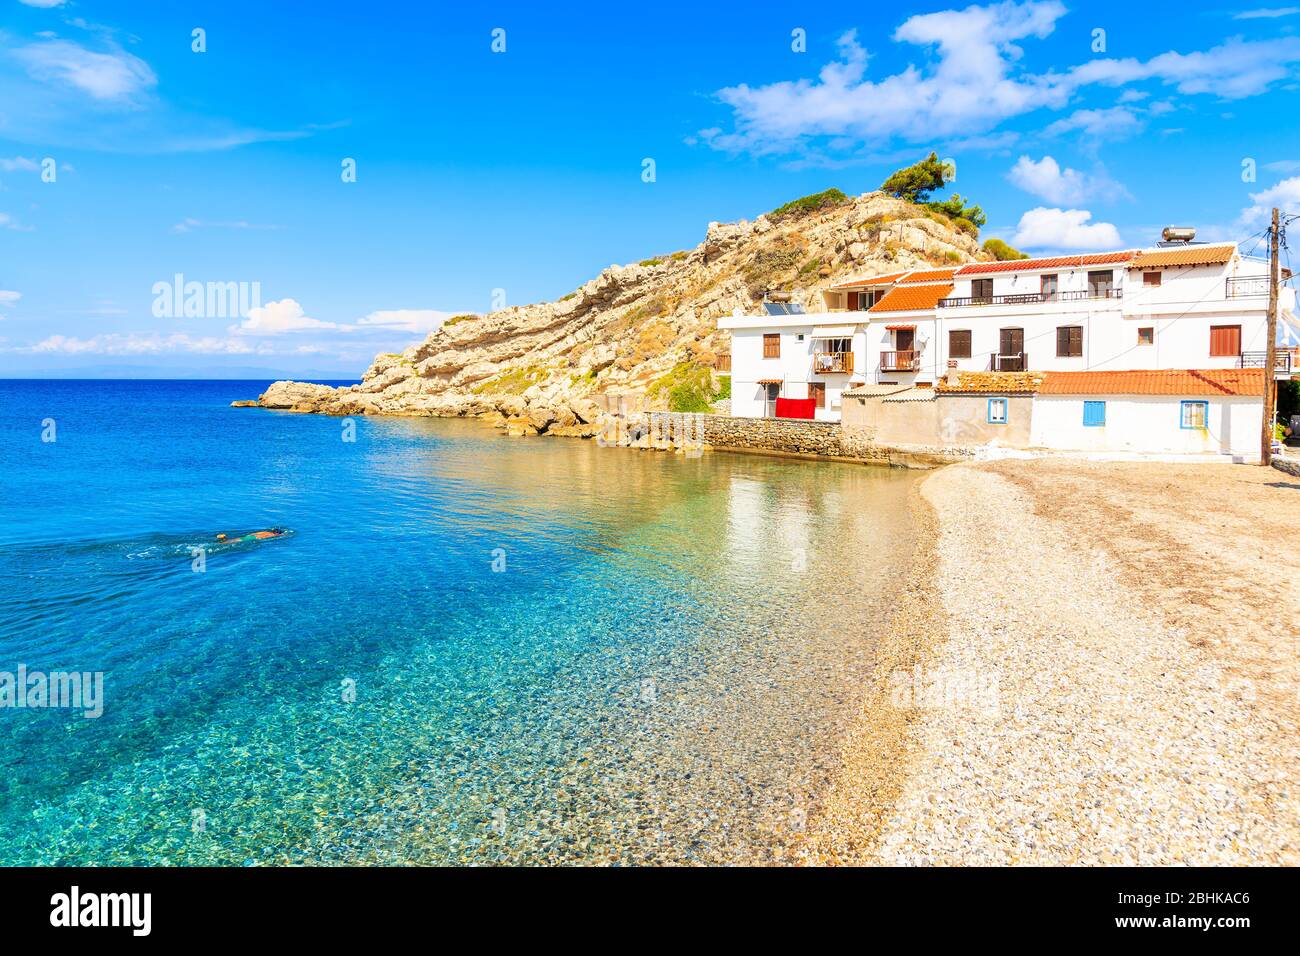 Schnorchler schwimmen in kristallklarem azurblauem Meerwasser in Kokkari Dorf mit typischen weißen Häusern am Ufer, Samos Insel, Ägäis, Griechenland Stockfoto